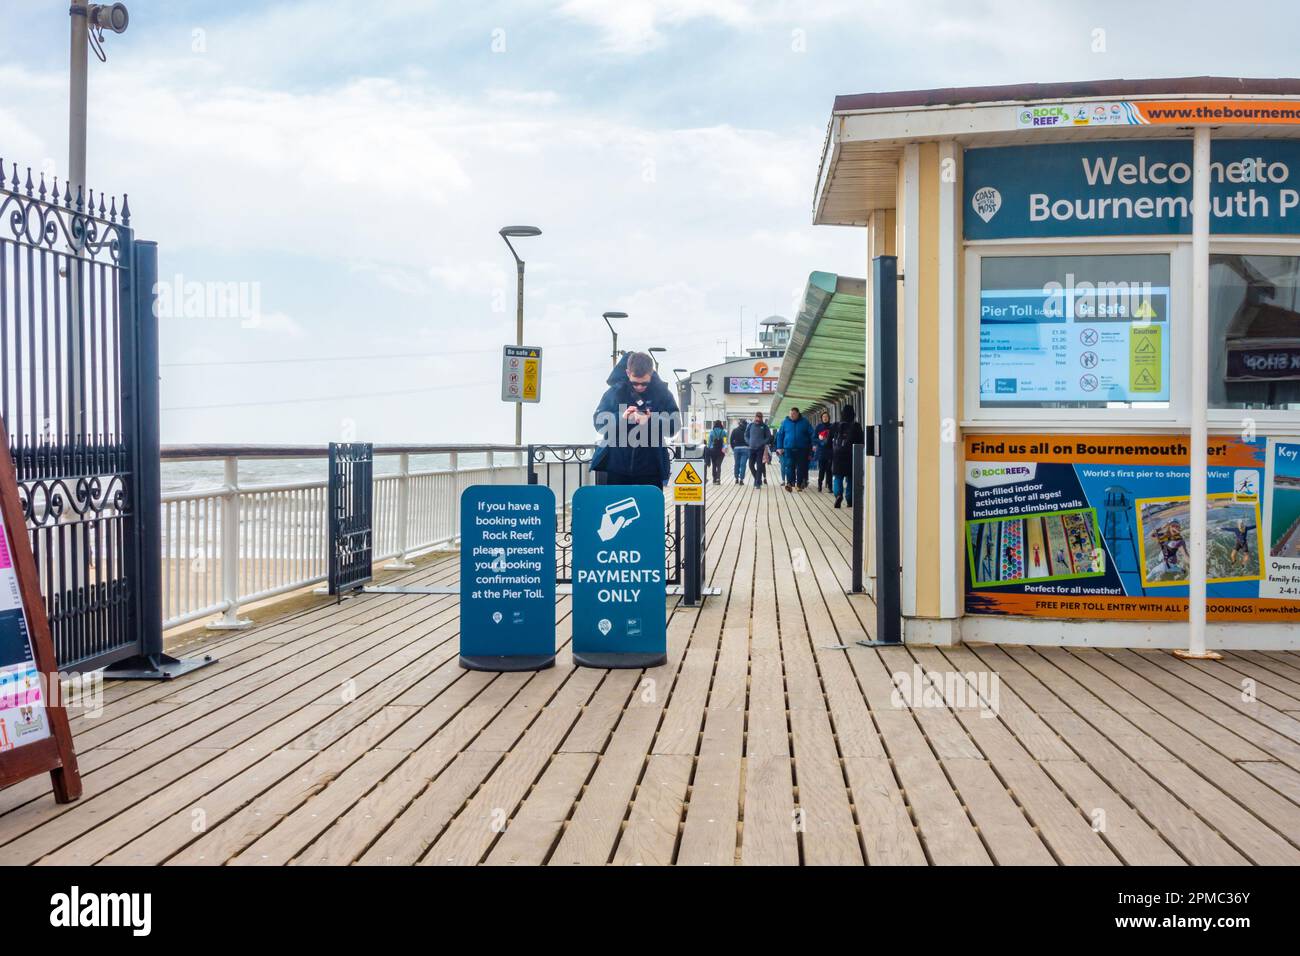 Se paga una tarifa y el pago se realiza con tarjeta para caminar por el muelle de Bournemouth en Dorset, Reino Unido Foto de stock